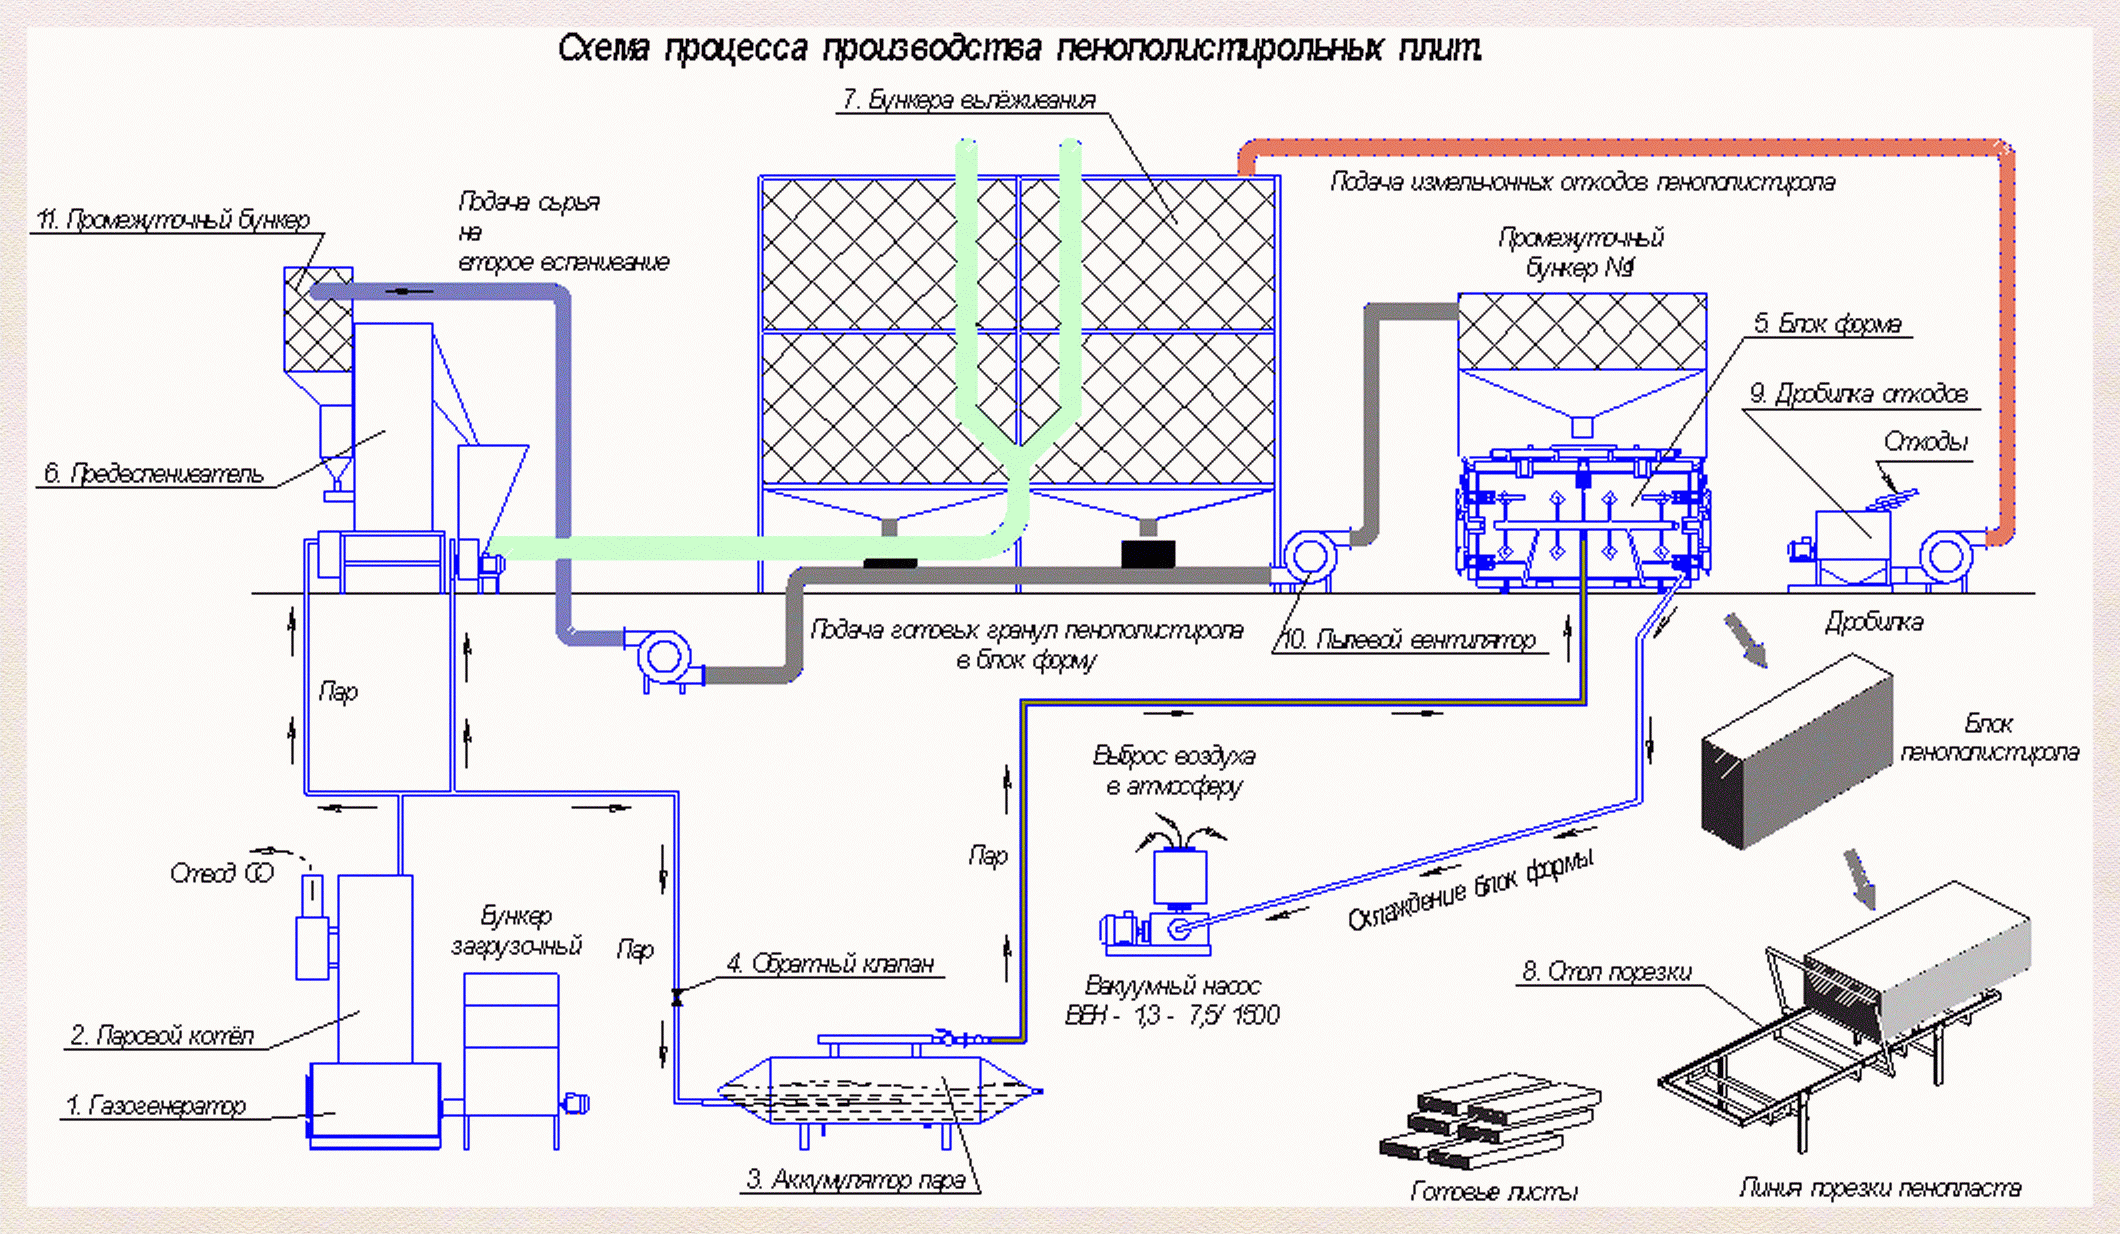 Схема производства пенопласта